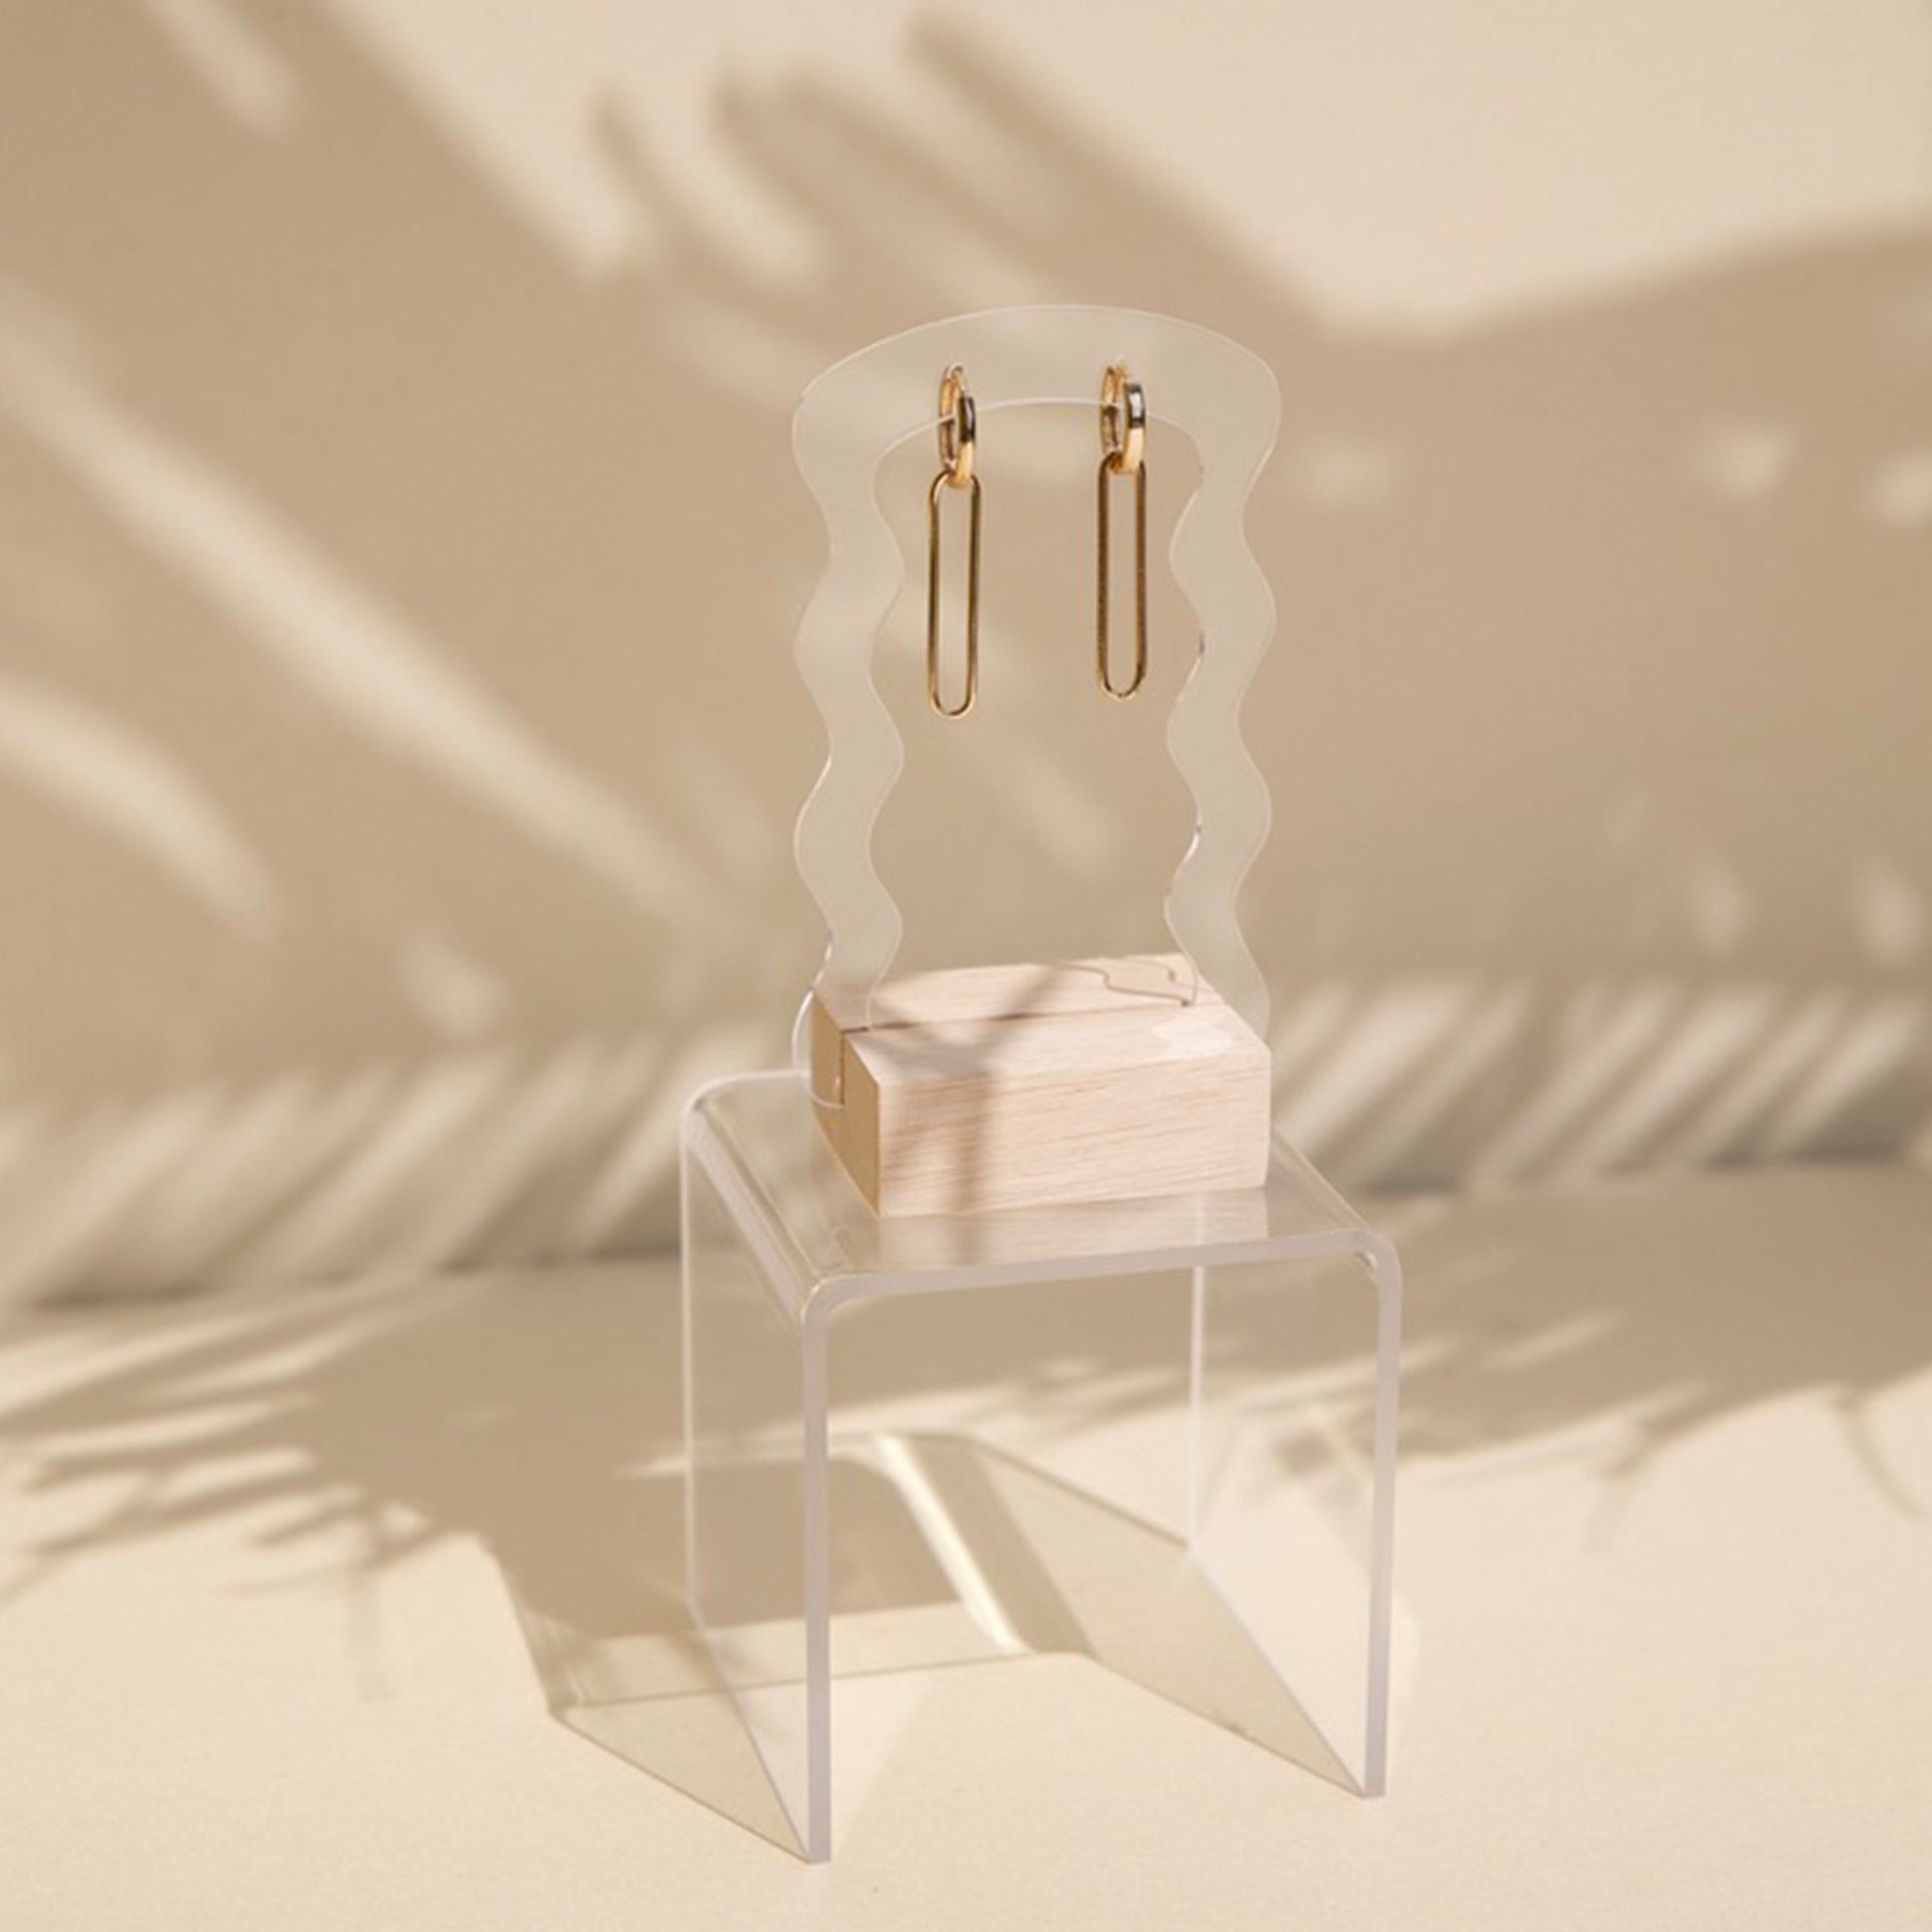 Porte boucles d'oreilles en acrylique transparent - Makk Design – makkdesign